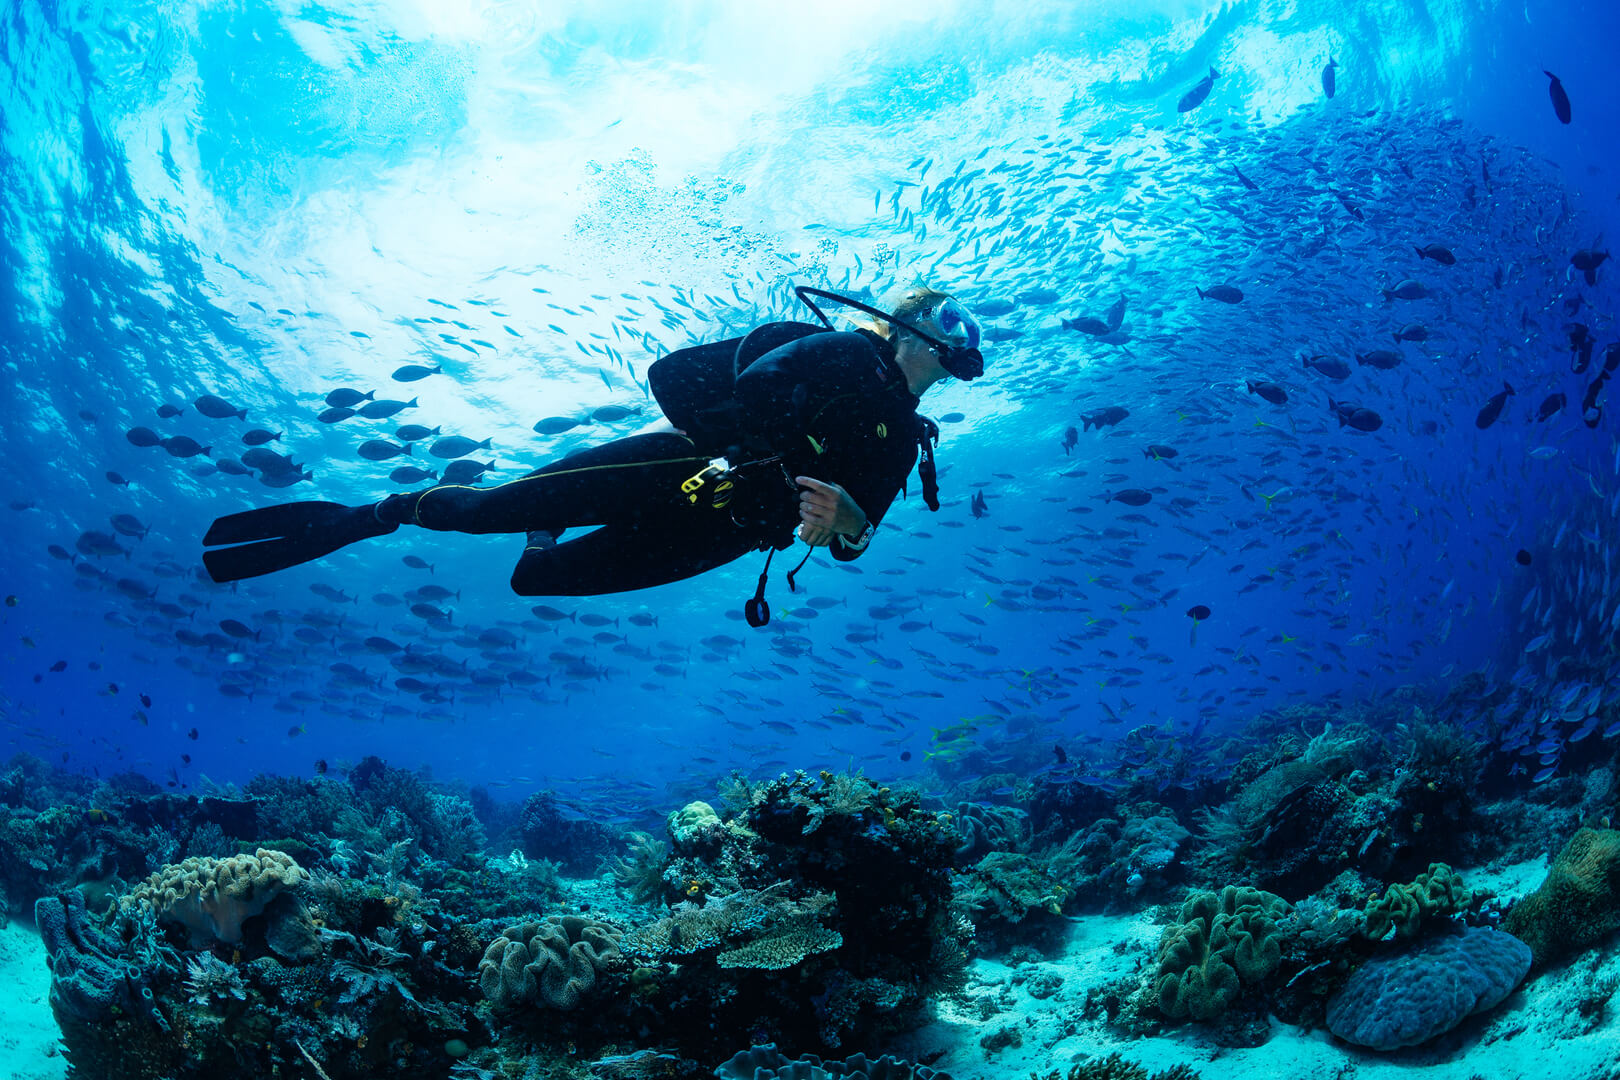 Ragazza subacquea immersione sulla barriera corallina tropicale con sfondo blu e pesce di barriera
